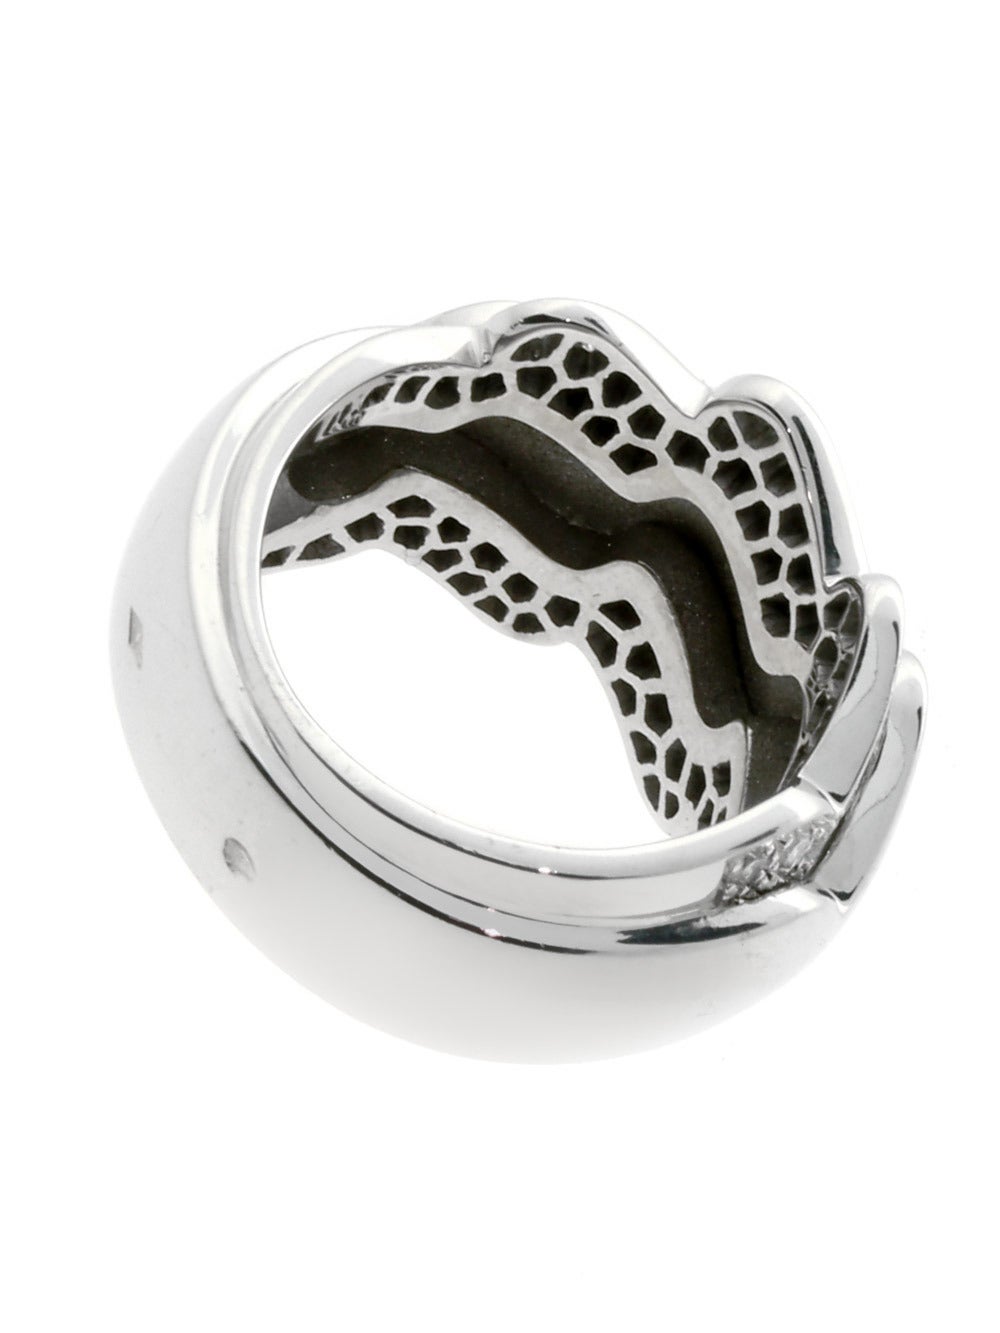 Ein fabelhafter authentischer Van Cleef & Arpels Ring im Wellen-Stil, besetzt mit 66 der feinsten Van Cleef & Arpels Diamanten im runden Brillantschliff in 18k Weißgold.

Abmessungen: Der Ring hat eine Breite von 15mm (.59″